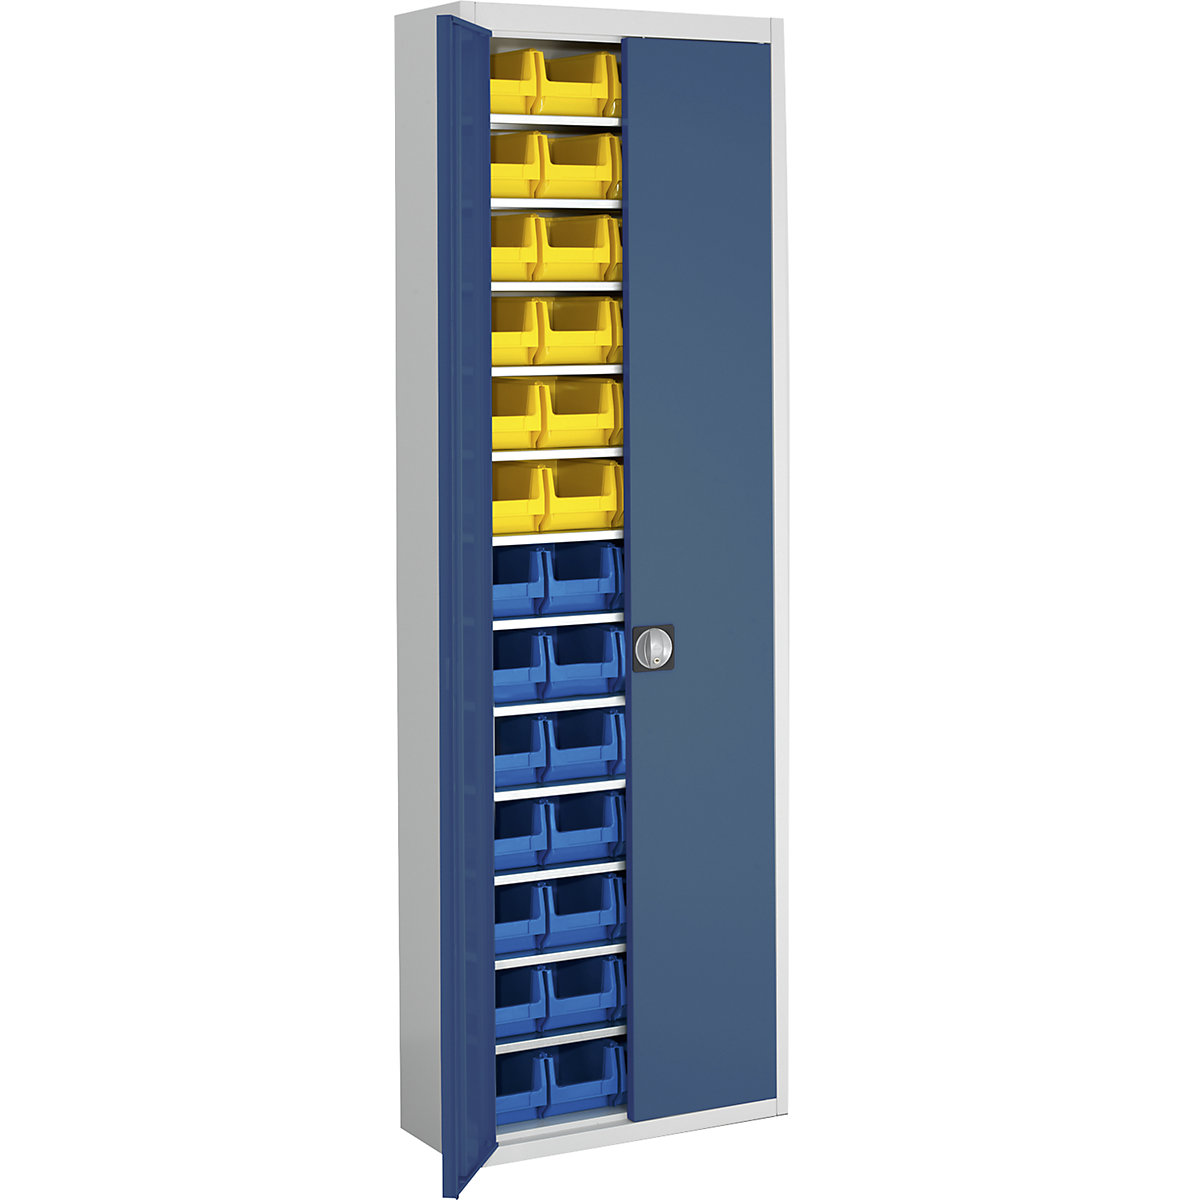 Skladišni ormar s otvorenim skladišnim kutijama – mauser, VxŠxD 2150 x 680 x 280 mm, u dvije boje, korpus u sivoj boji, vrata u plavoj boji, 52 kutije-8